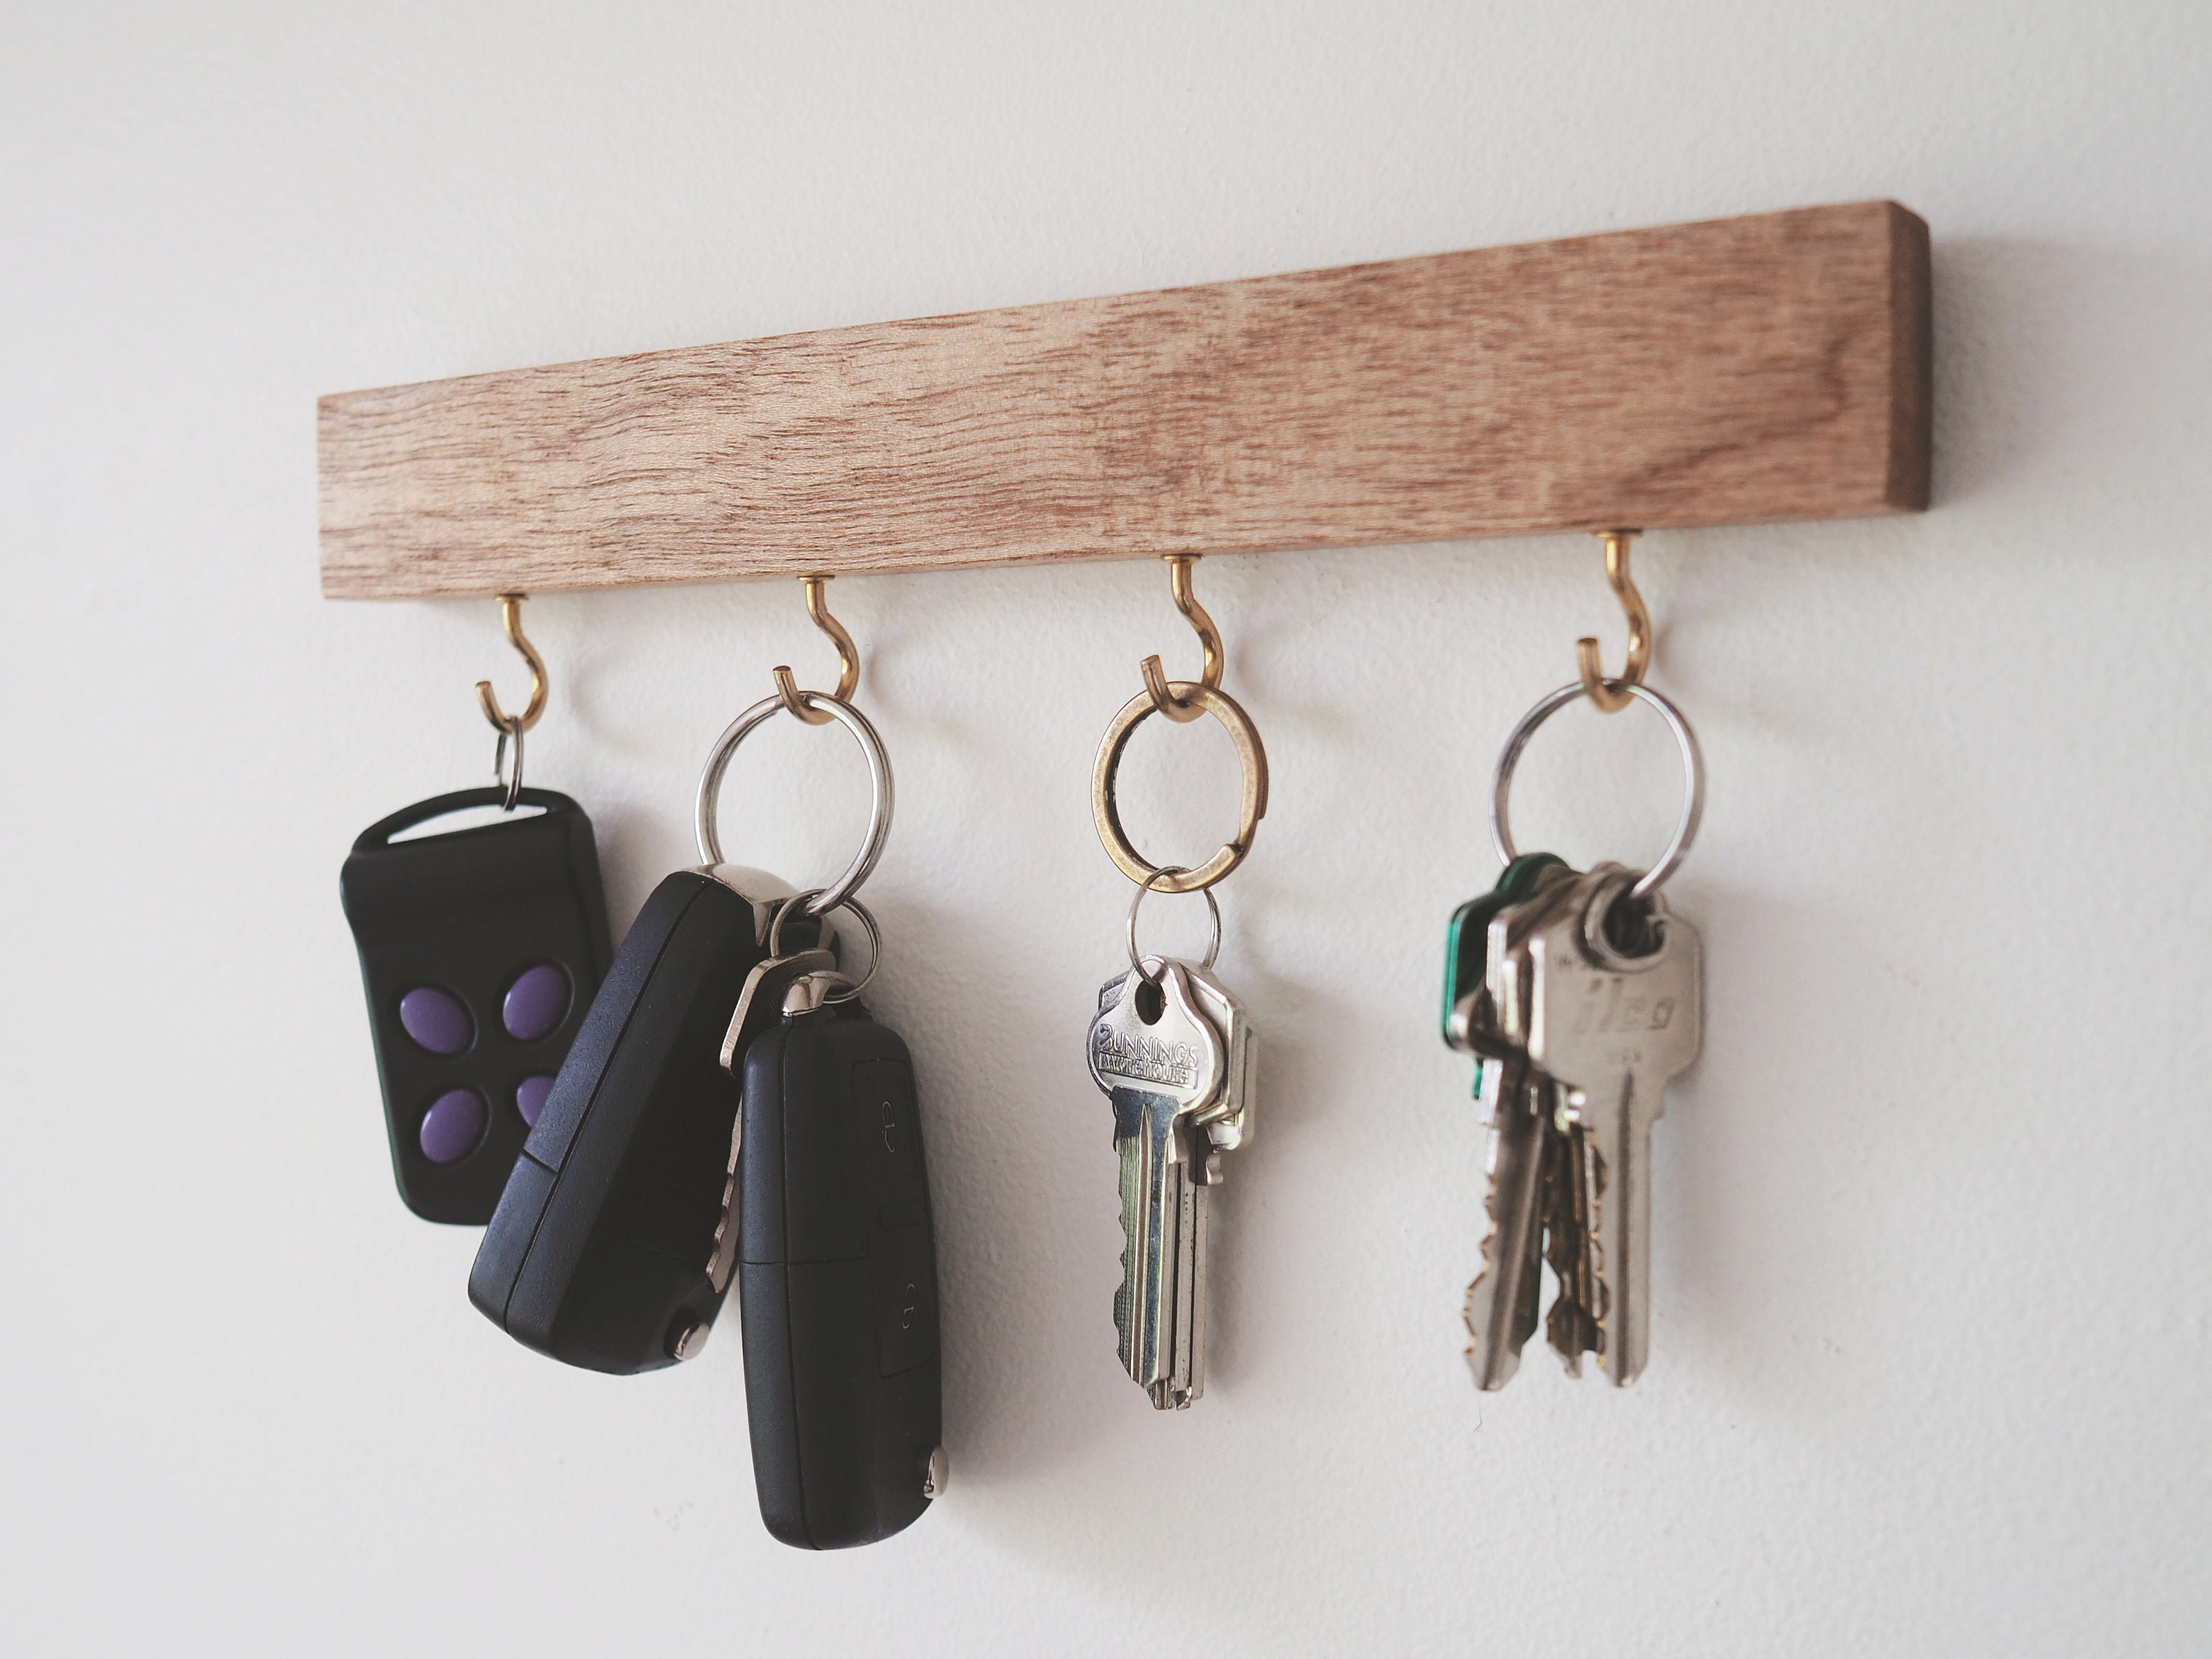 1 Stück Schlüsselhalter Für Die Wand Familien Schlüsselhaken